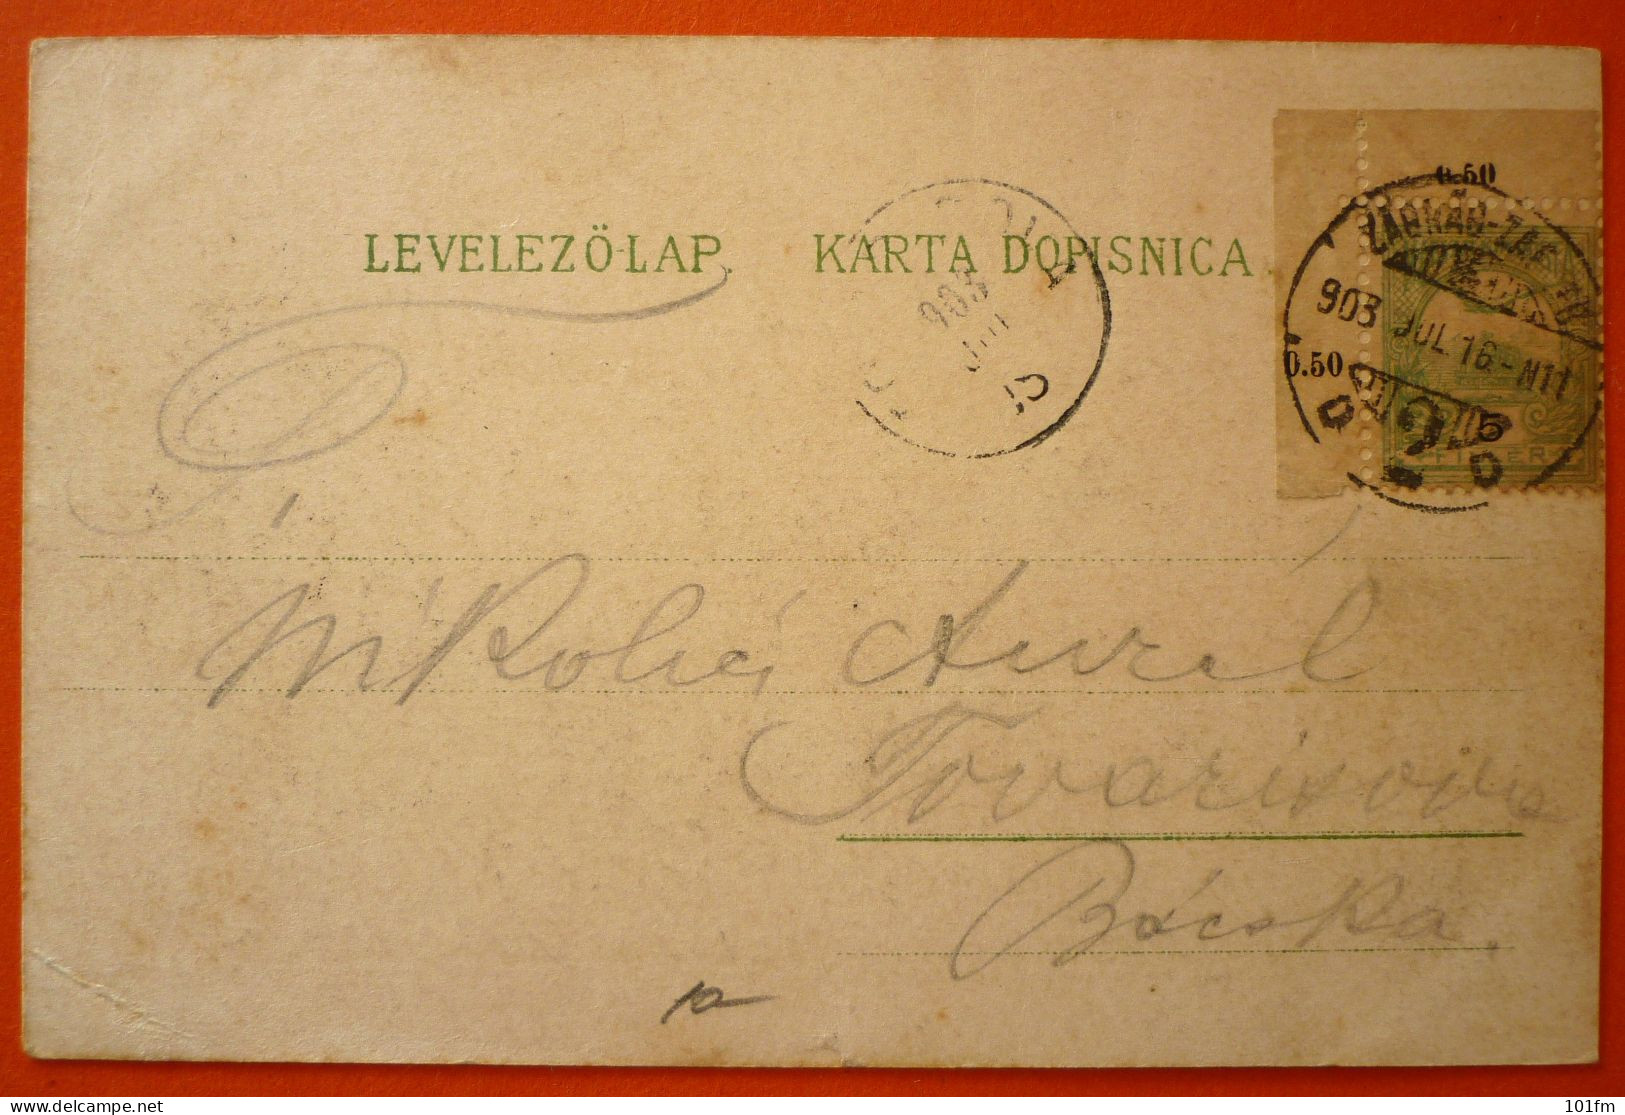 CROATIA - HRVATSKA , ZAGREB -AKADEMICKI TRG I SPOMENIK SV. JURAJA 1903 - Croatie